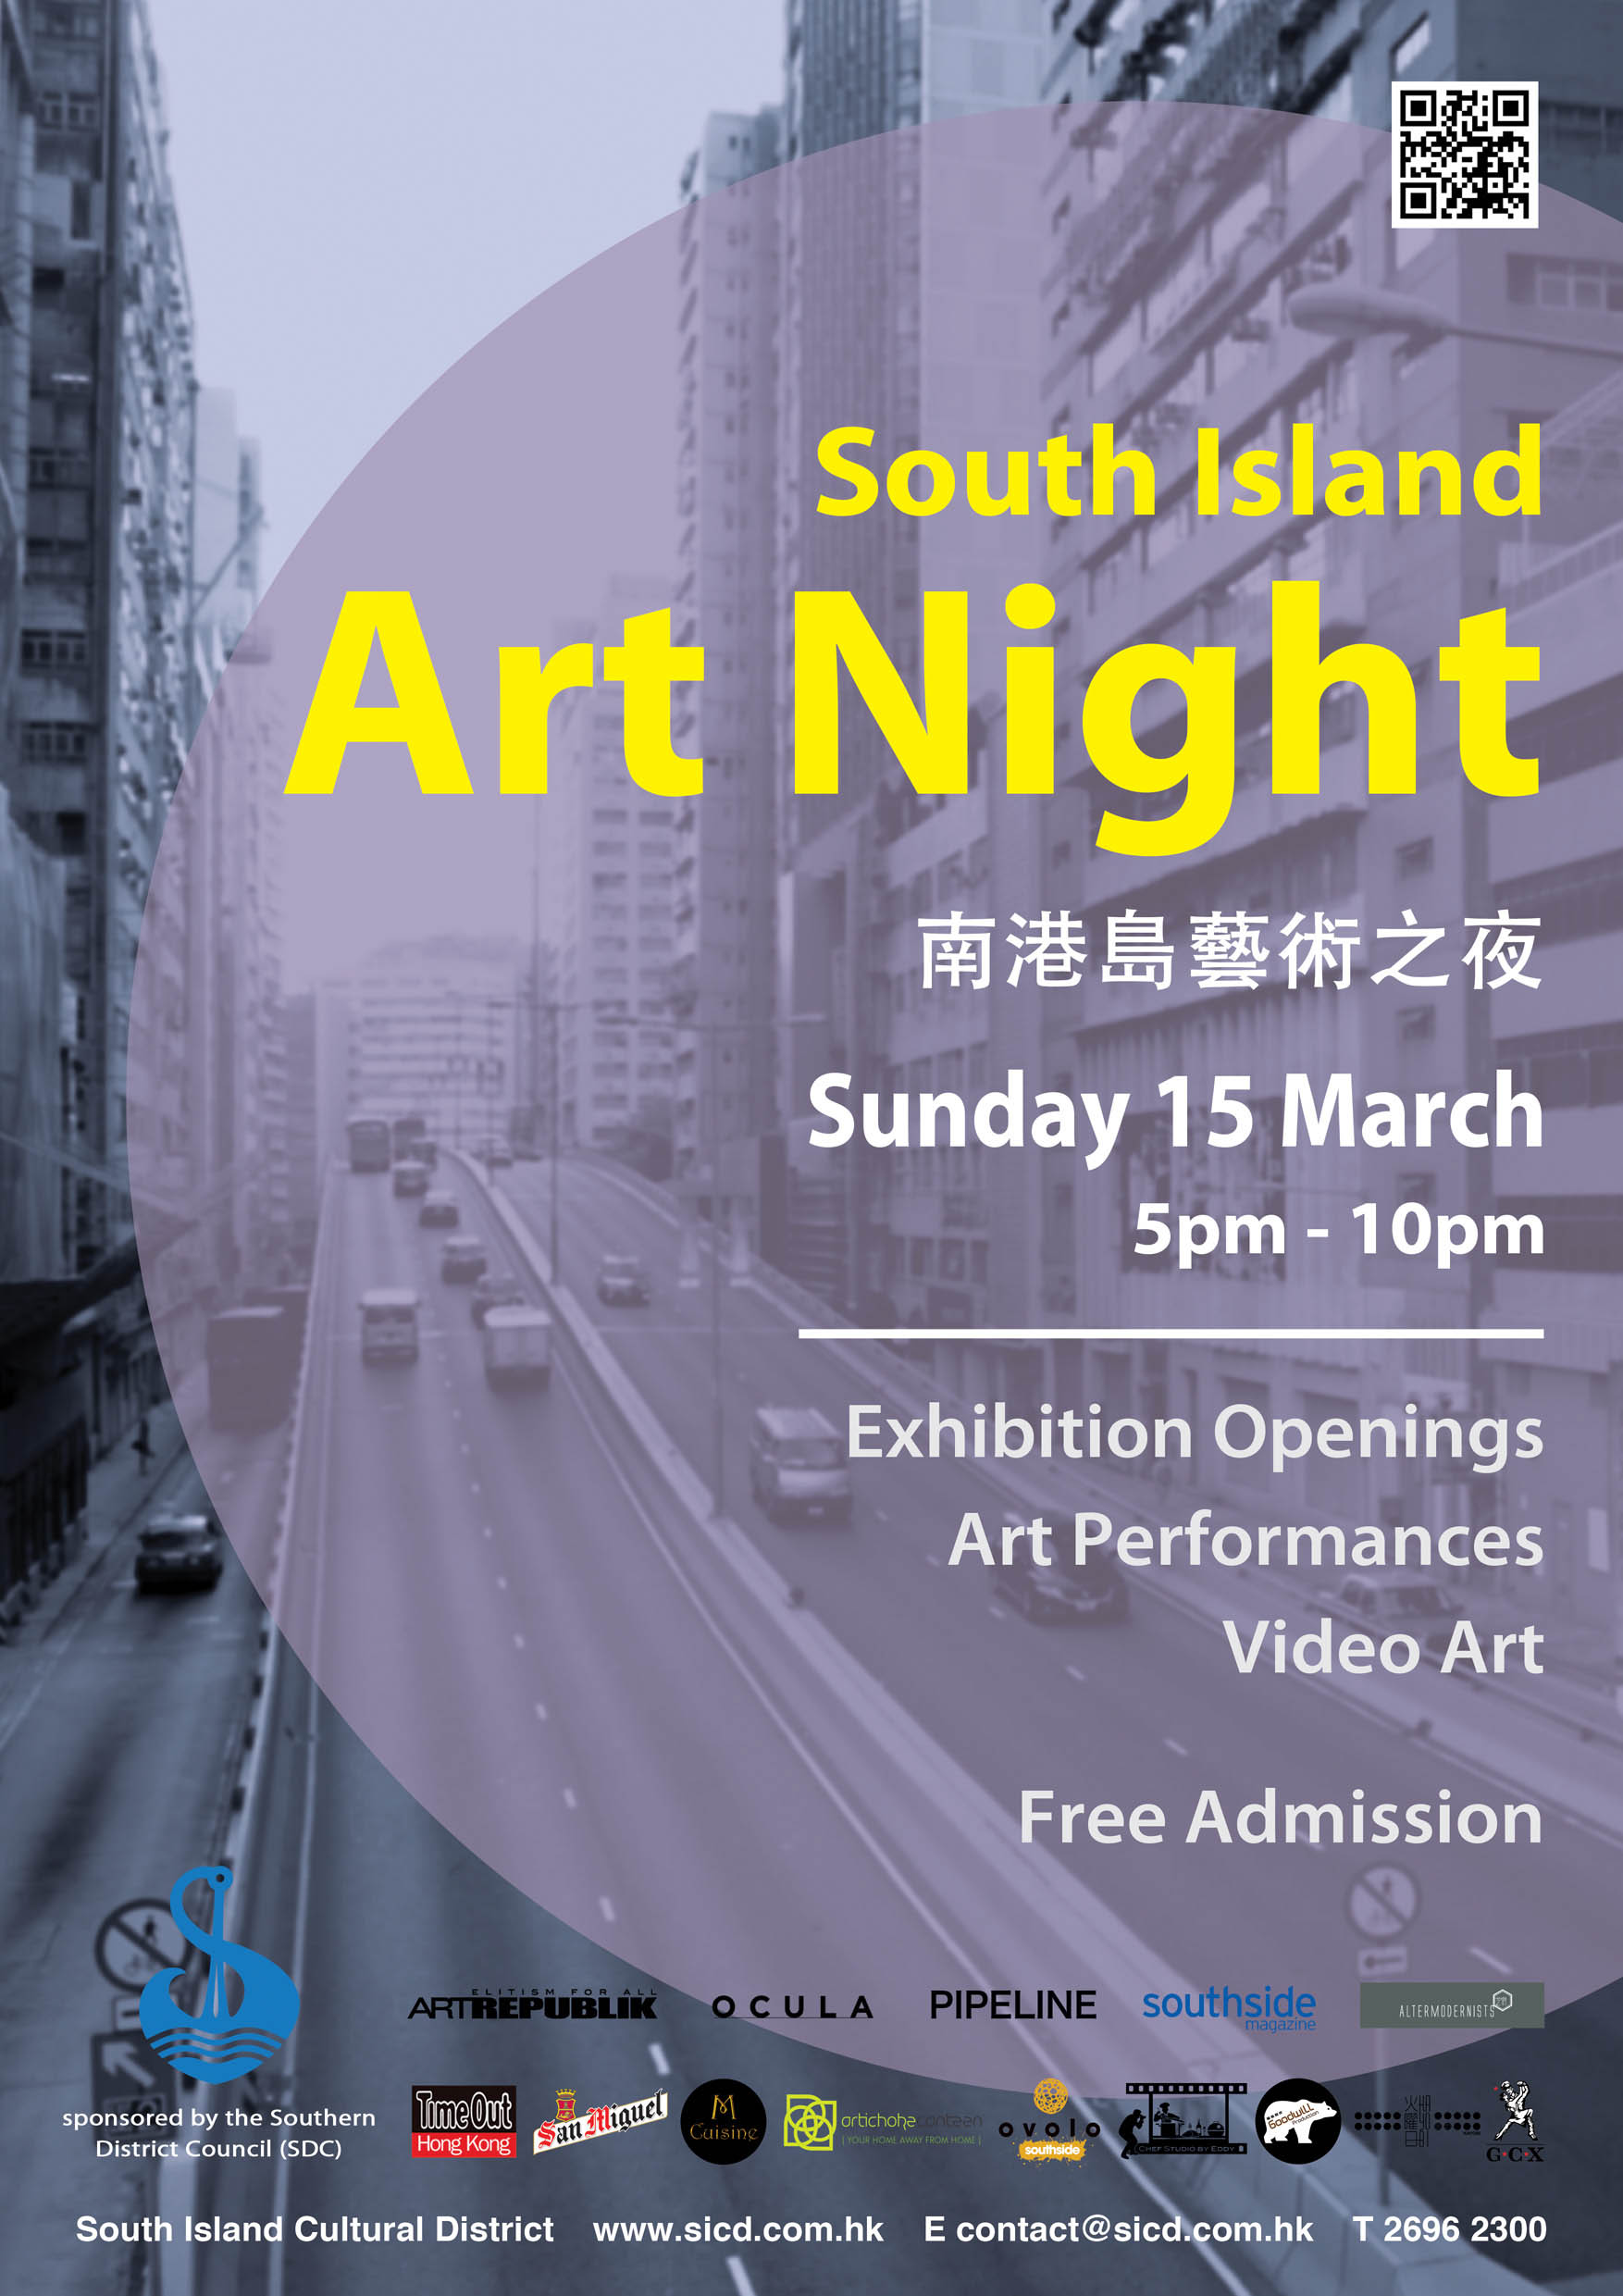 South Island Art Night on 15 Mar 2015